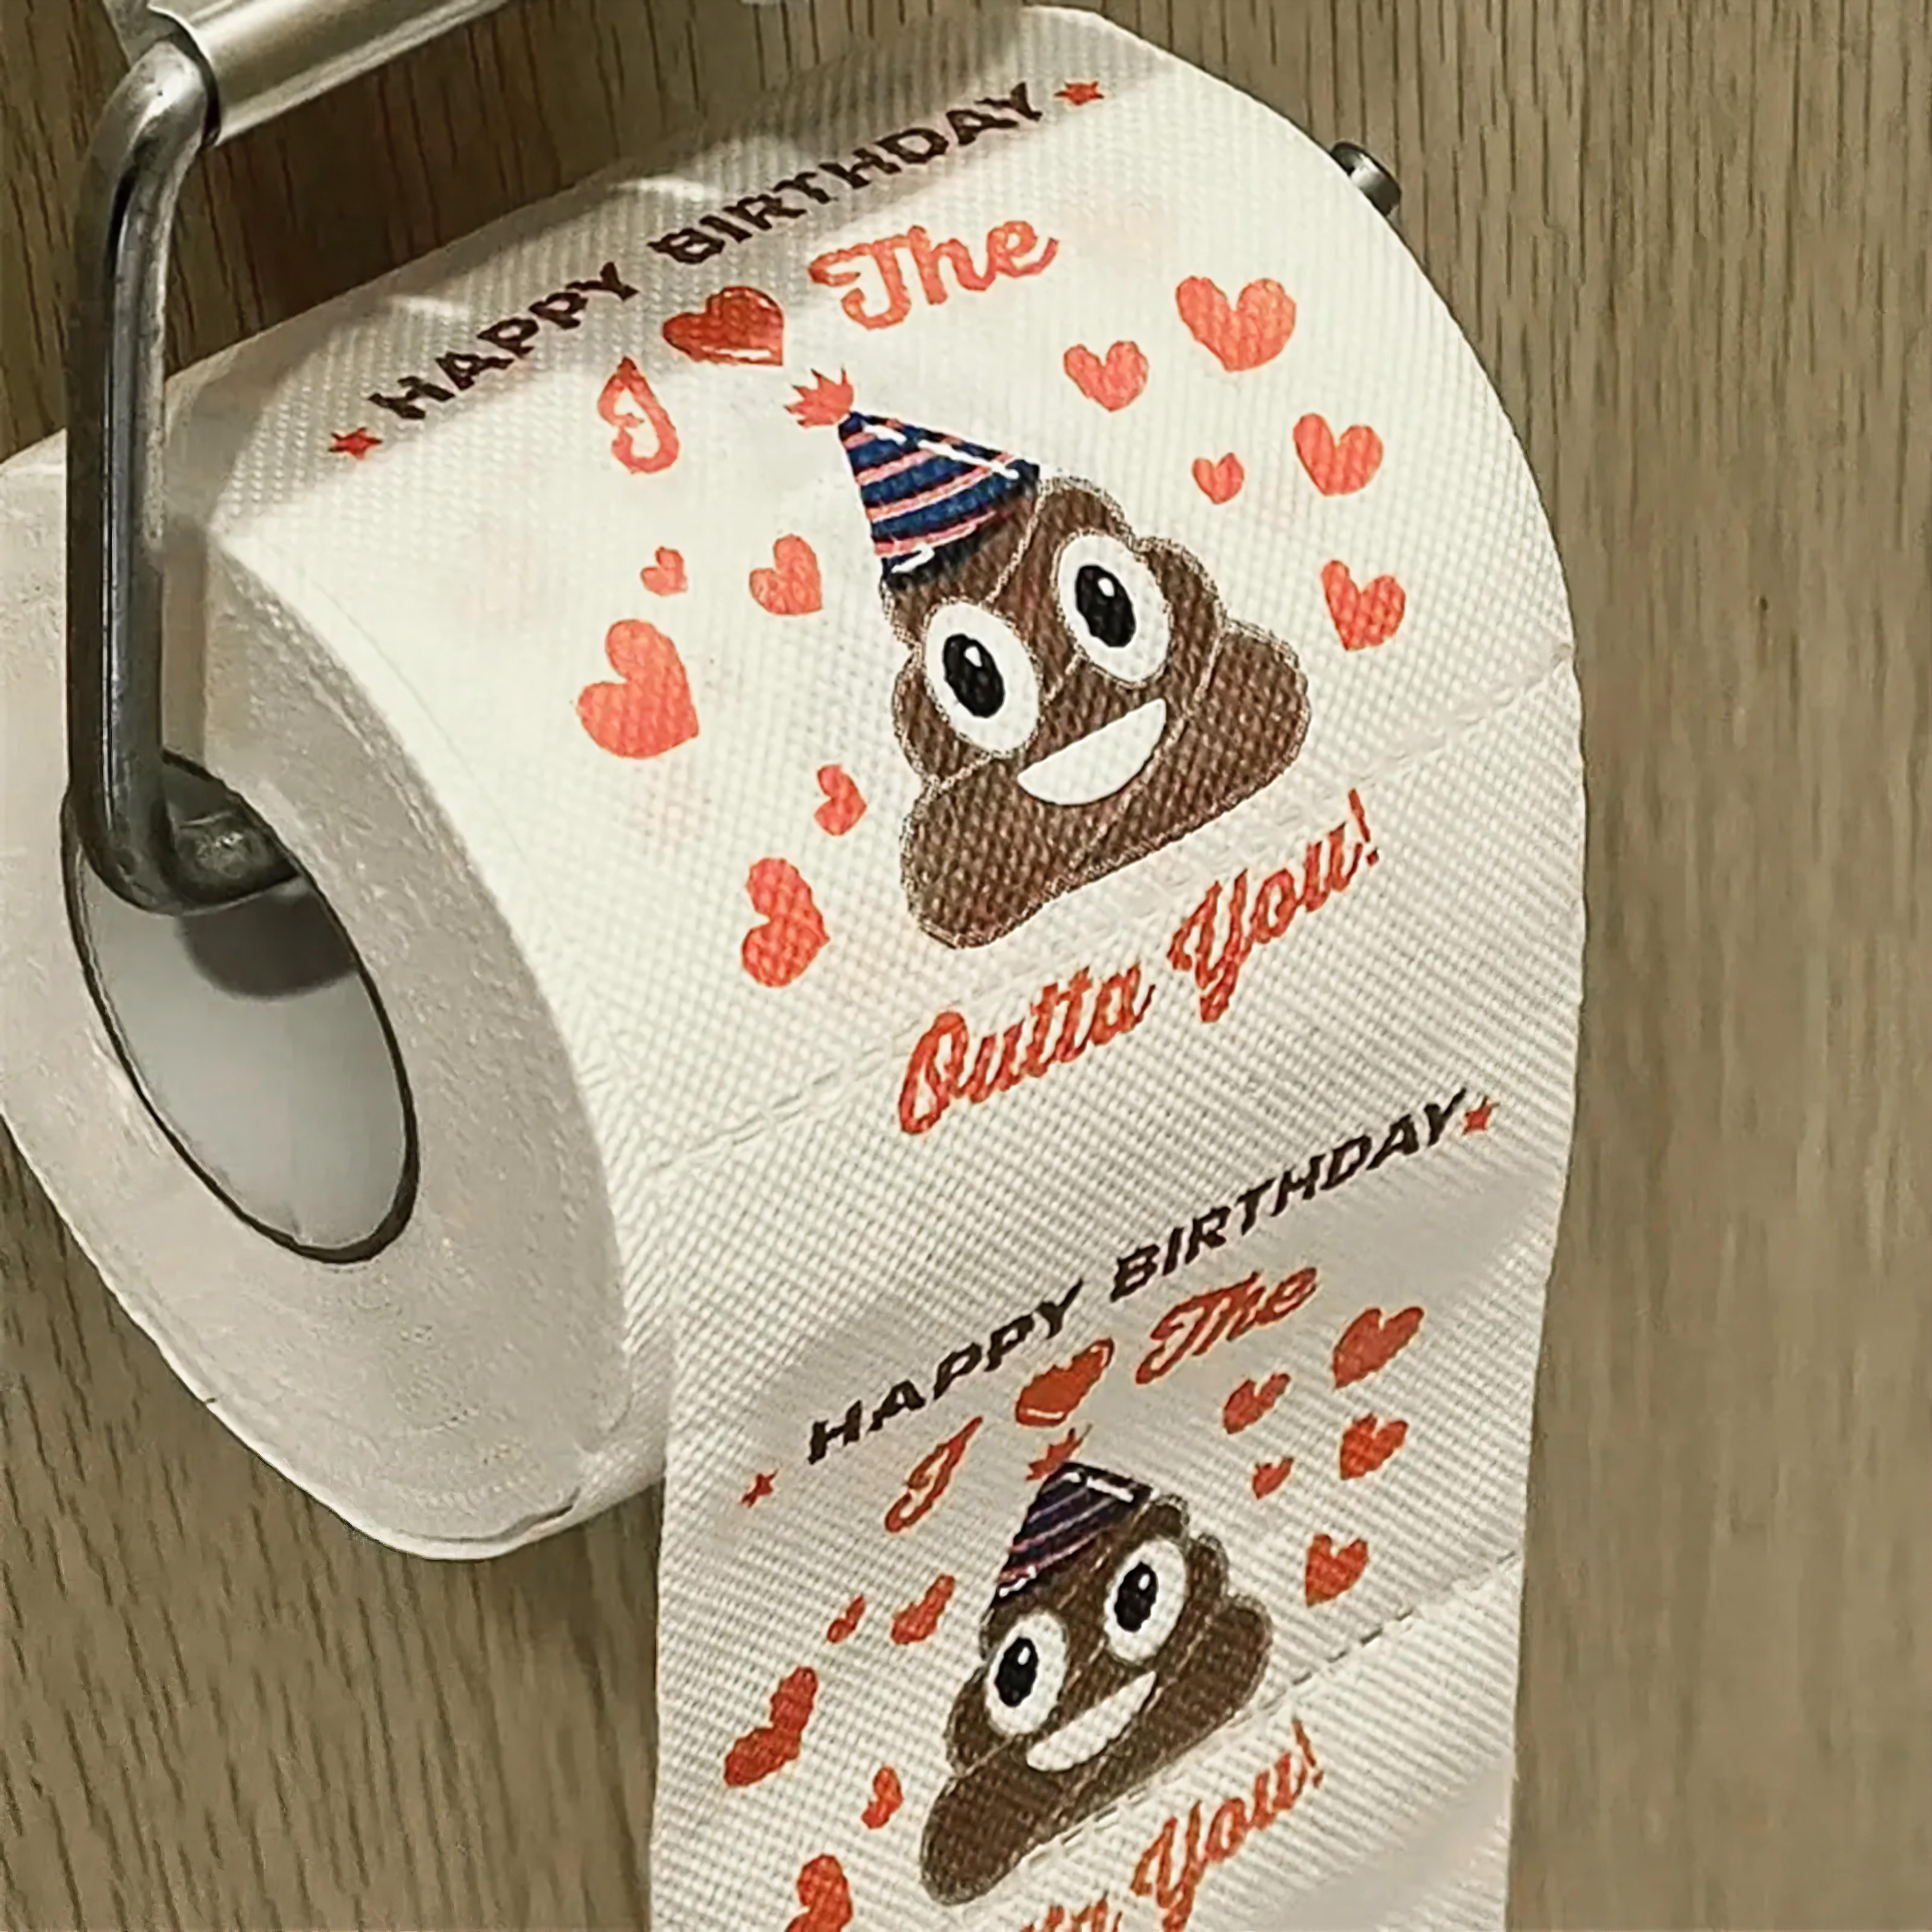 Papier toilette anniversaire : idée cadeau humoristique et décalée !